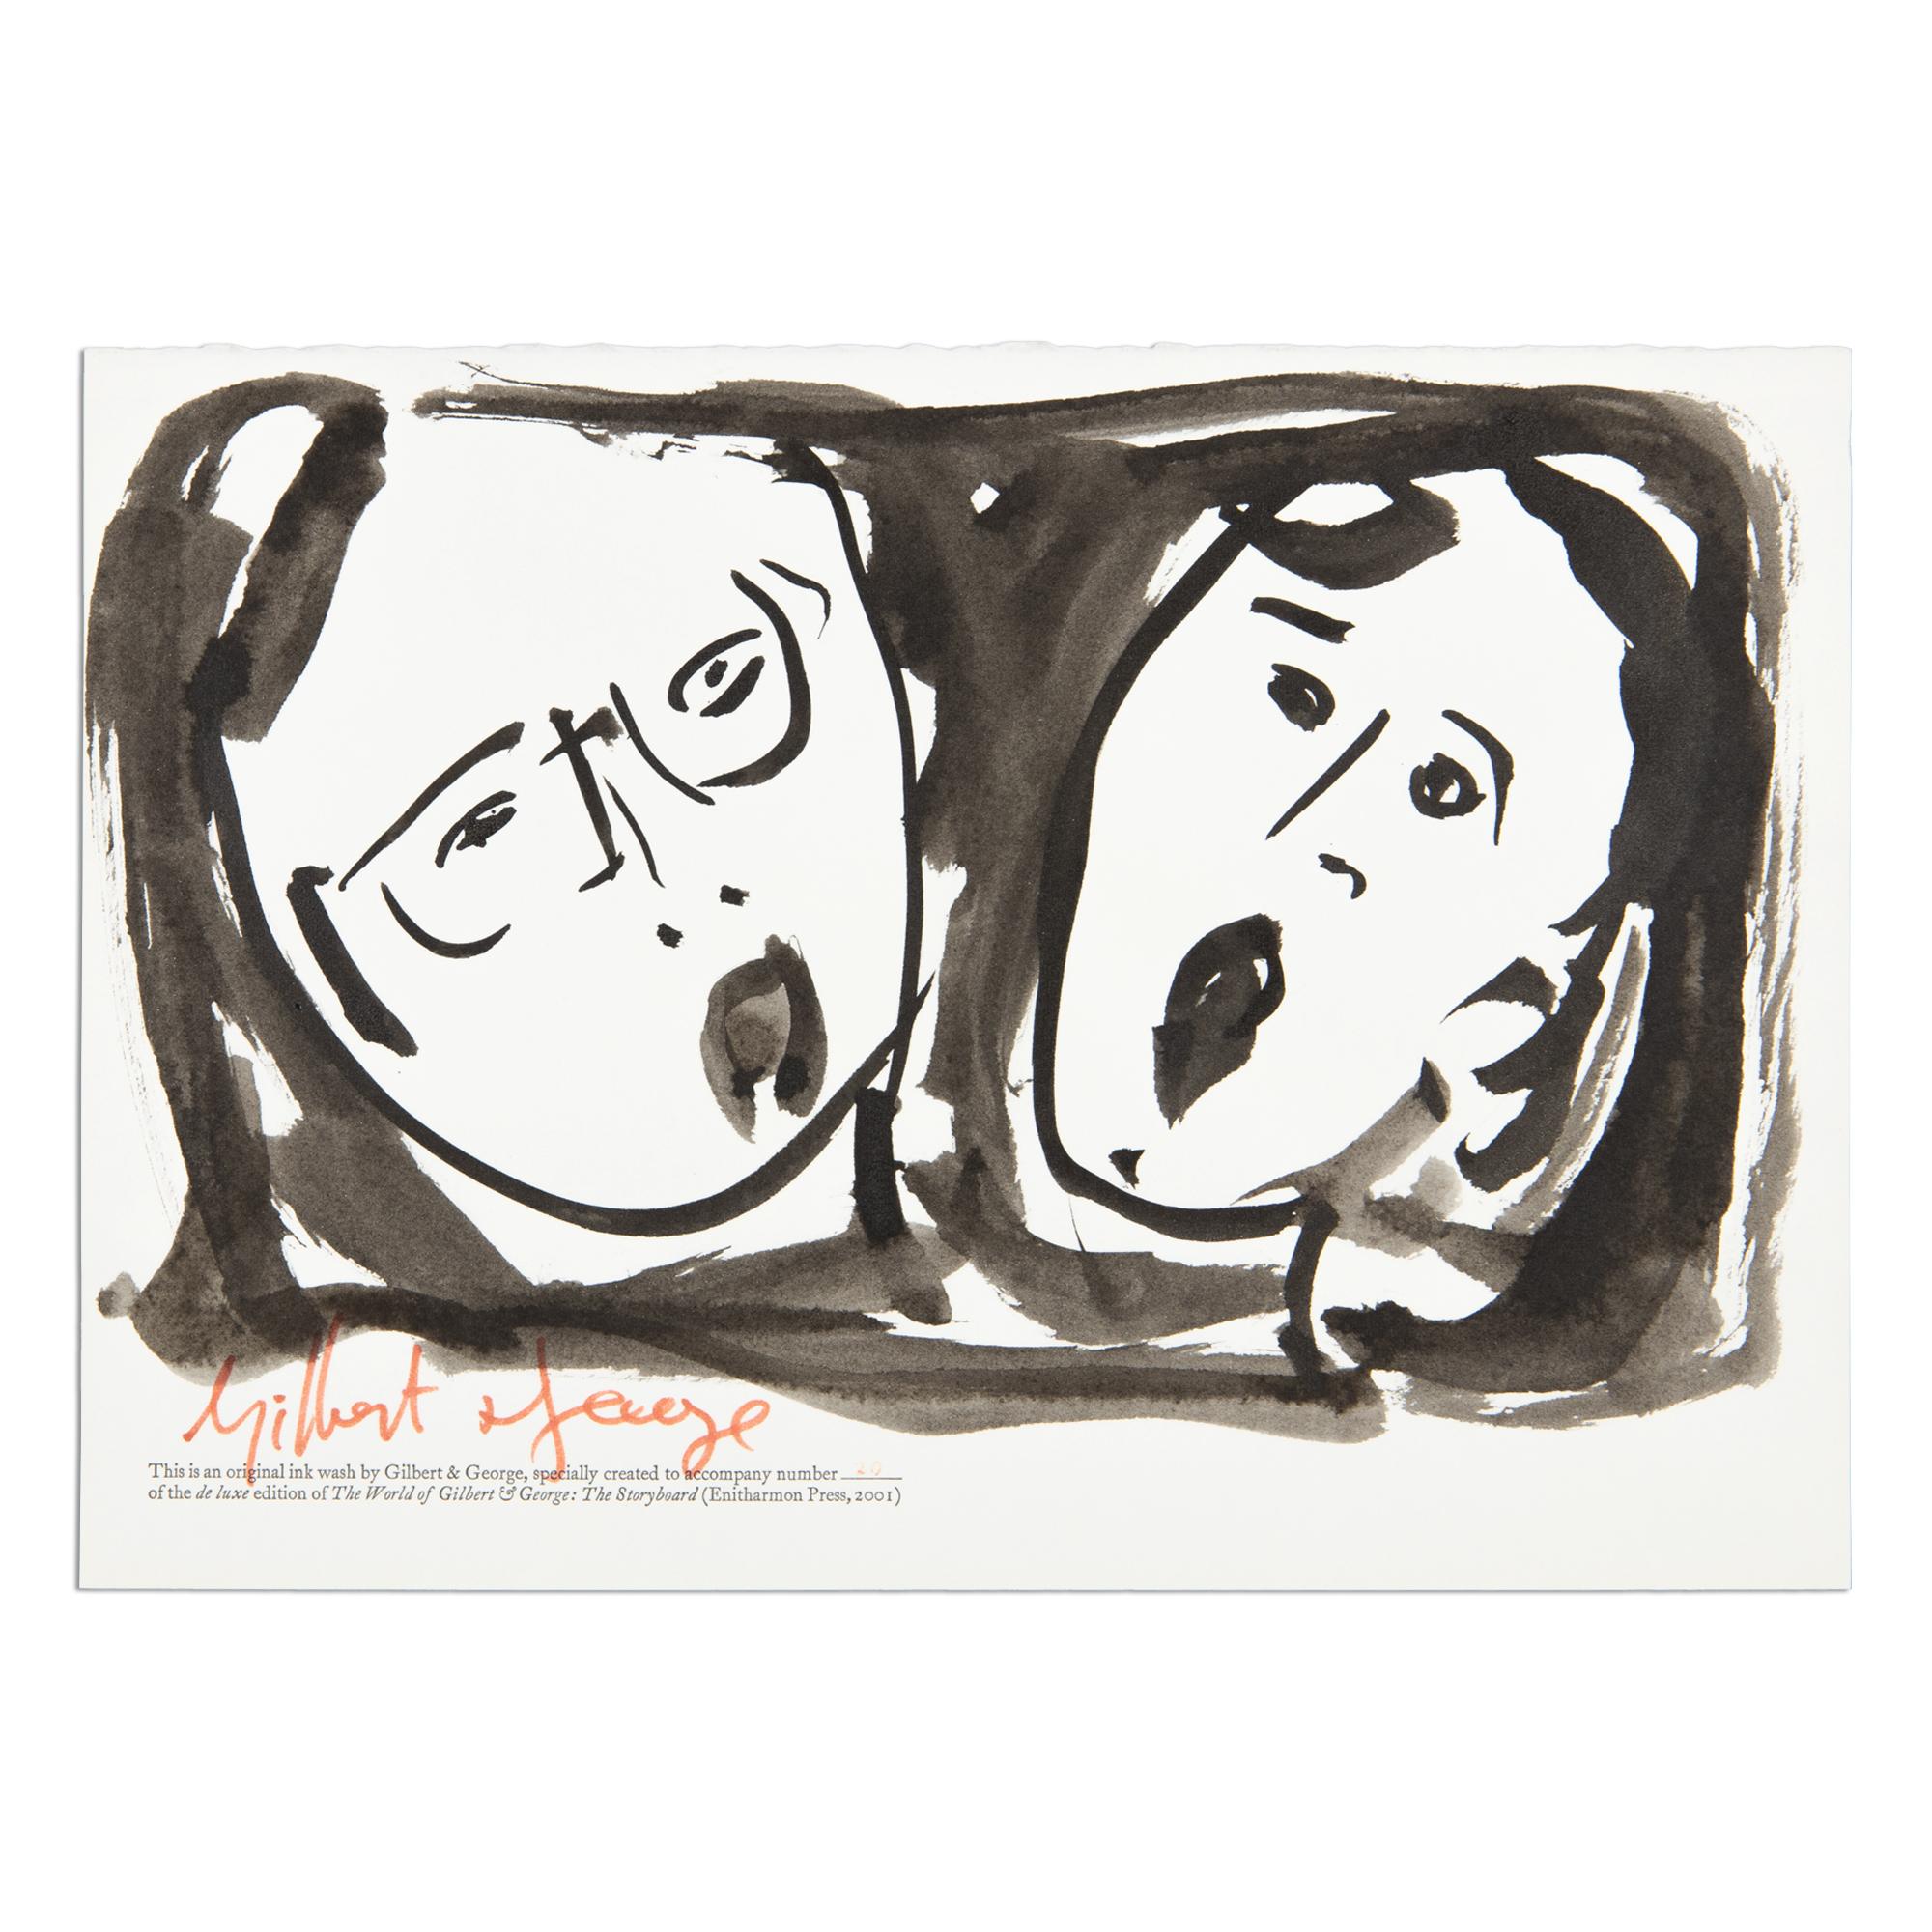 Gilbert & George (britisch, geb. 1942 und 1943)
Die Welt von Gilbert & George: Das Storyboard, 2001
Medium: Tuschezeichnung auf Papier (und Künstlerbuch)
Abmessungen: 20,3 x 29,2 cm (8 x 11½ Zoll)
Luxusausgabe von 150 Stück: Einzigartige